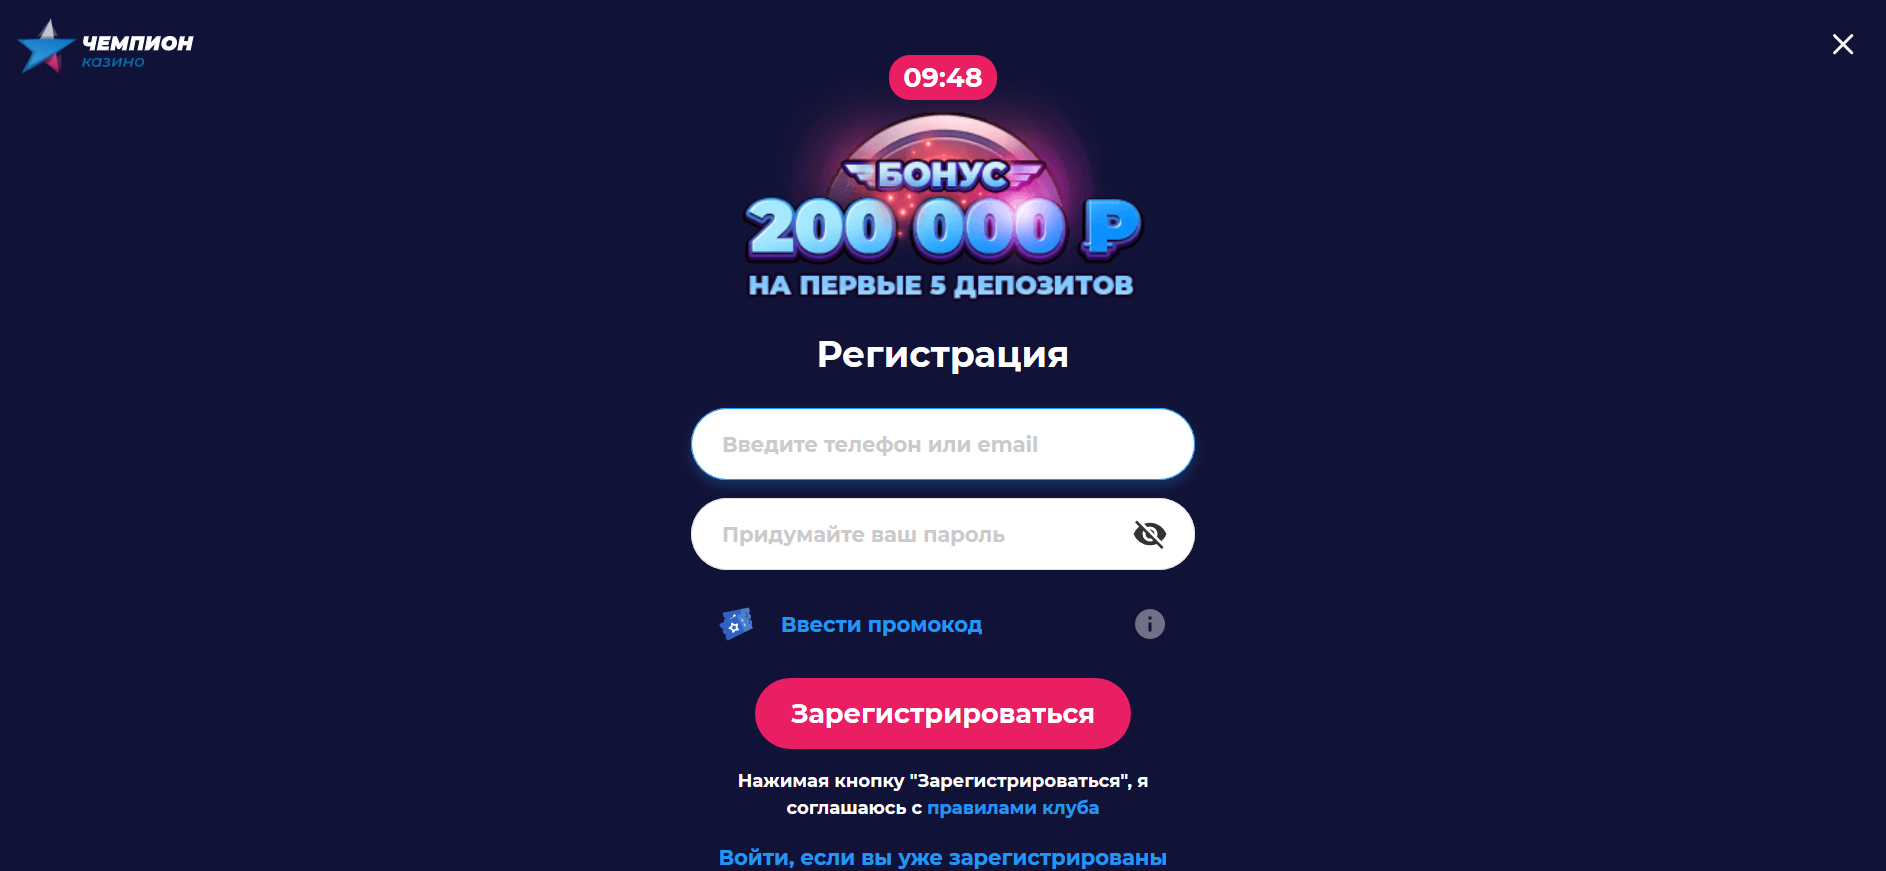 Казино чемпион промокод при регистрации playfortuna official ru casino